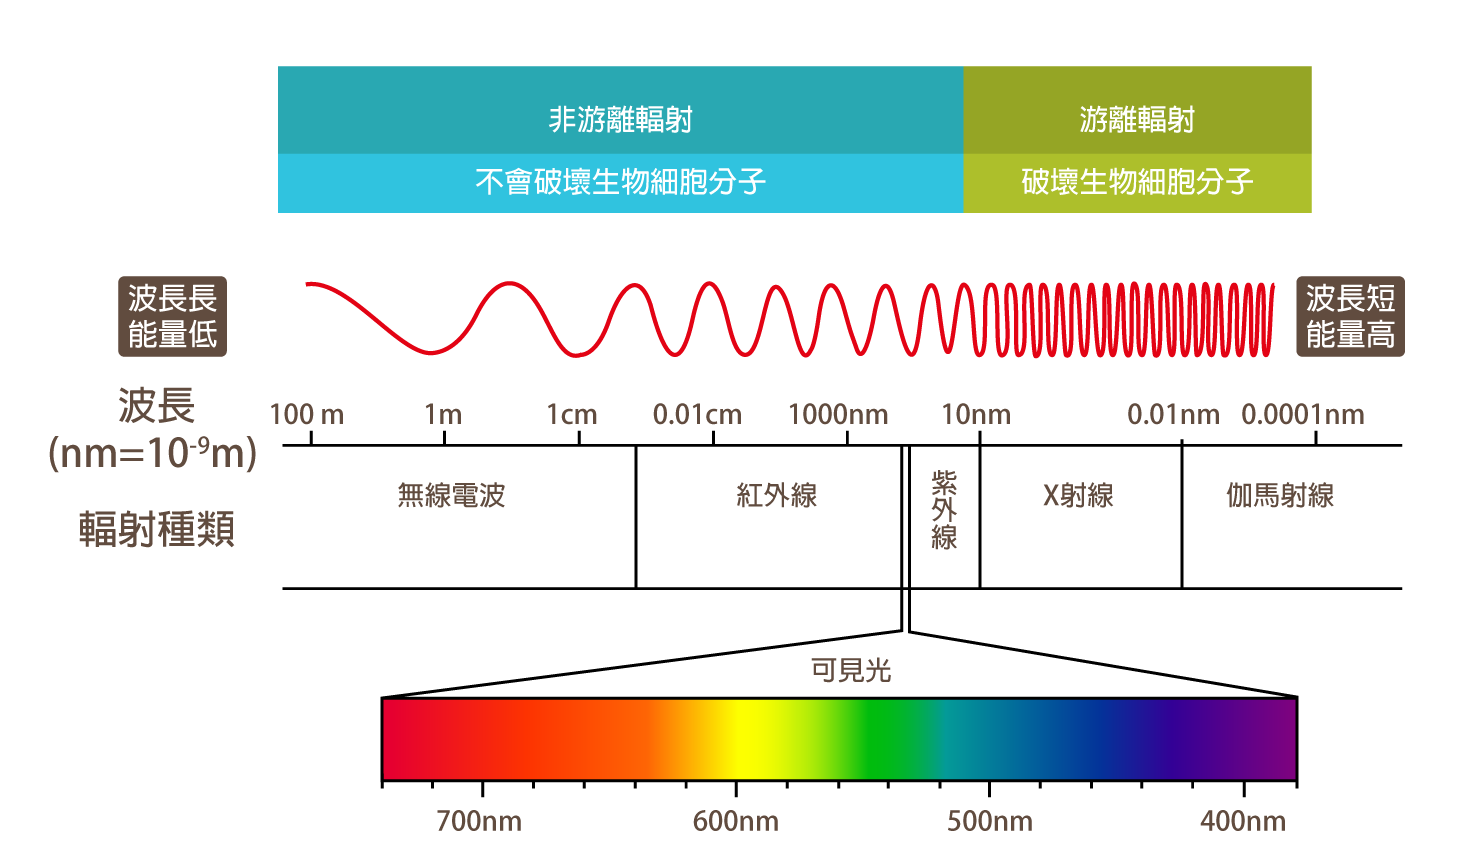 輻射冷卻效應所放出的輻射能量較低，是將地球表面的熱能透過紅外線形式向外太空釋出，與核能輻射不同。